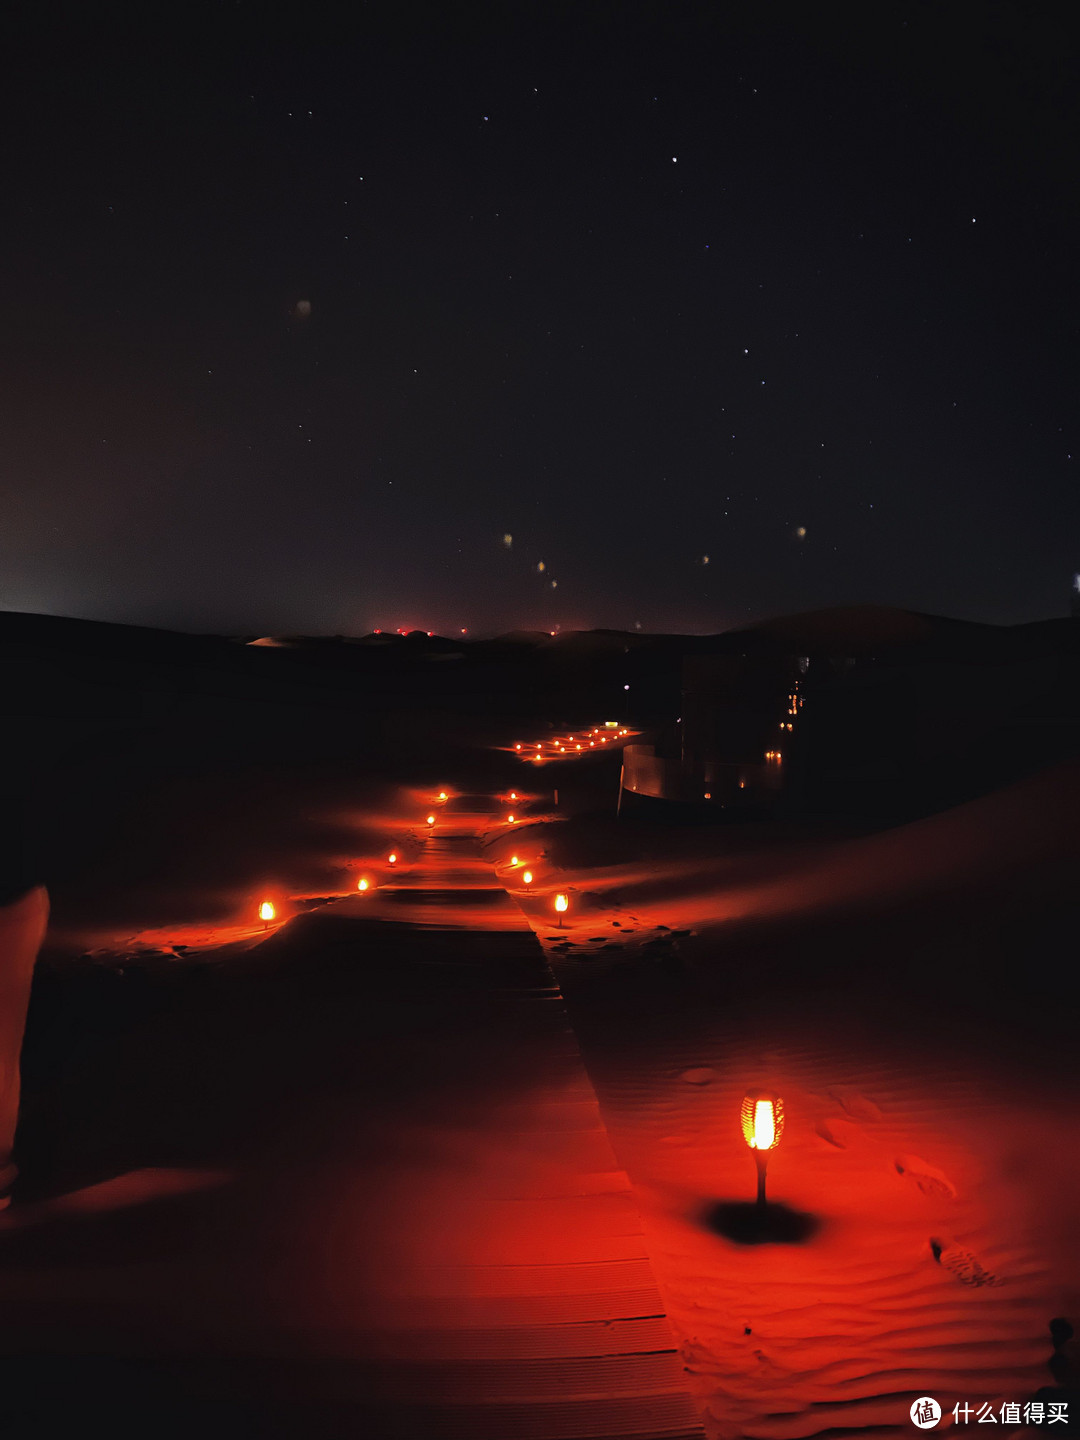 冬季错峰旅游性价比之王--中卫沙漠星星酒店！沙漠徒步，野攀贺兰山一站式体验~